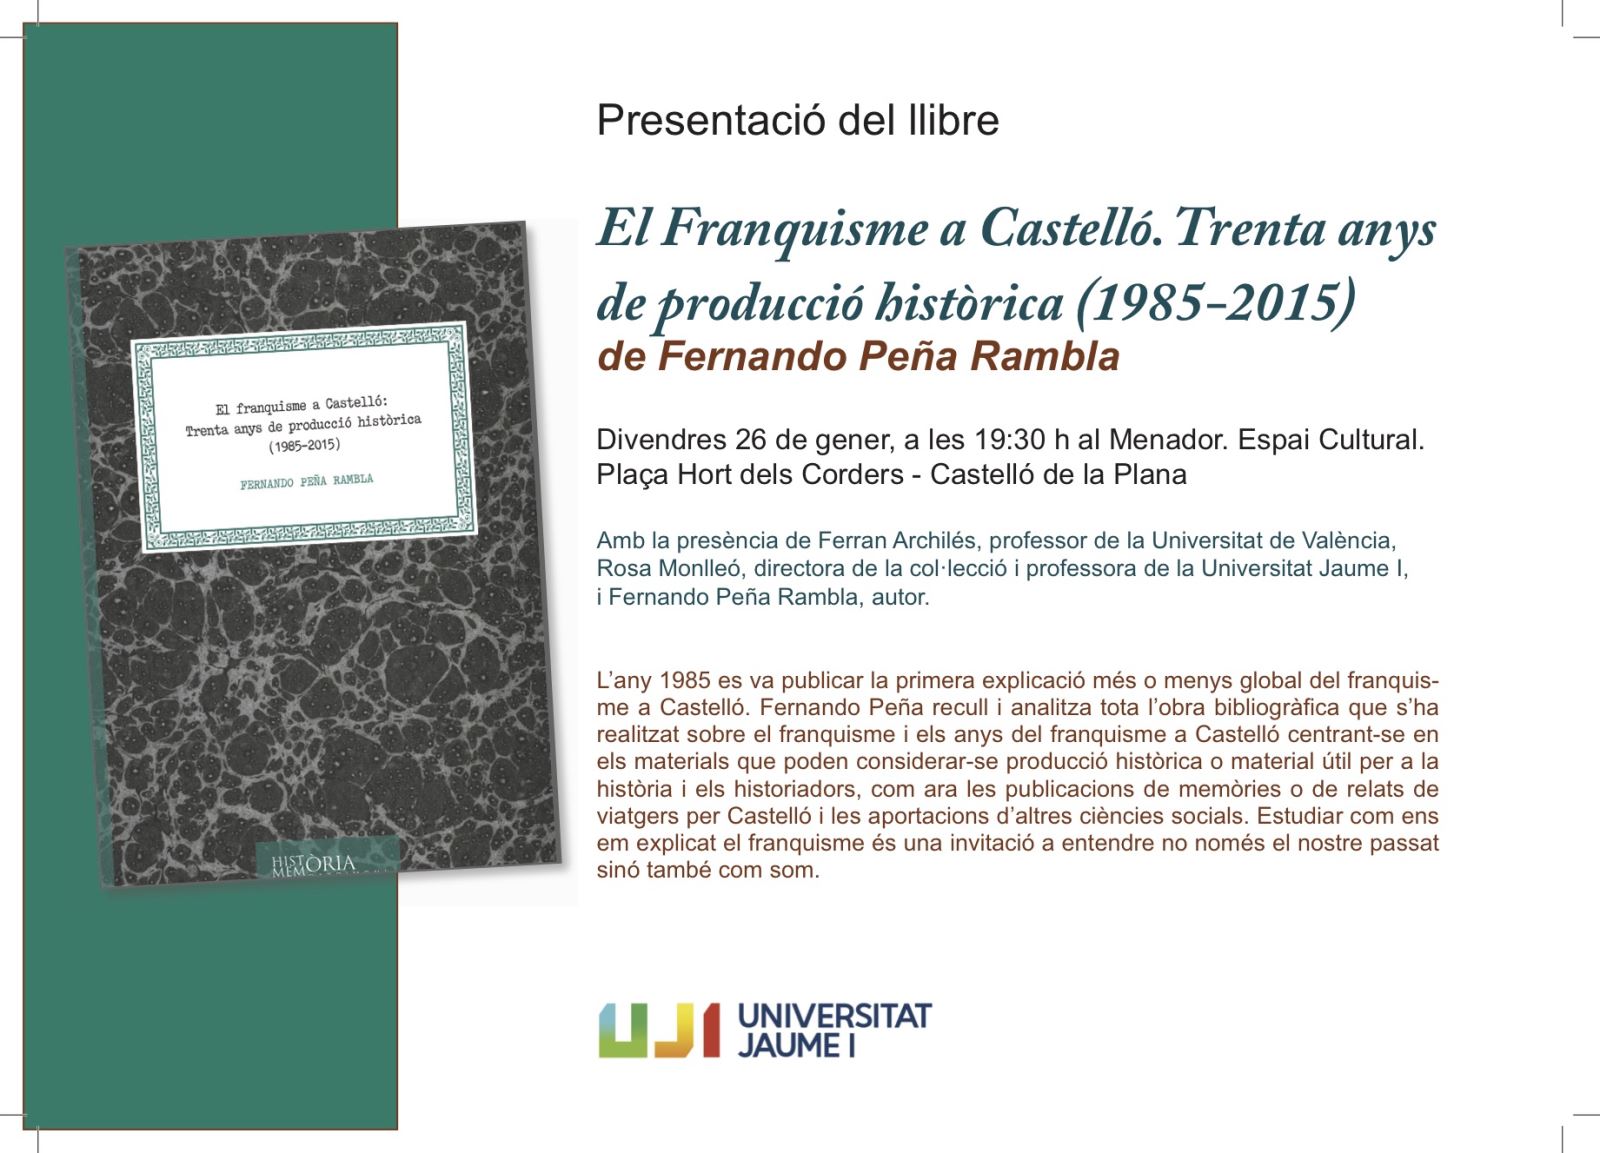 La Universitat Jaume I presenta "El Franquisme a Castelló. Trenta anys de producció històrica (1985-2015)"